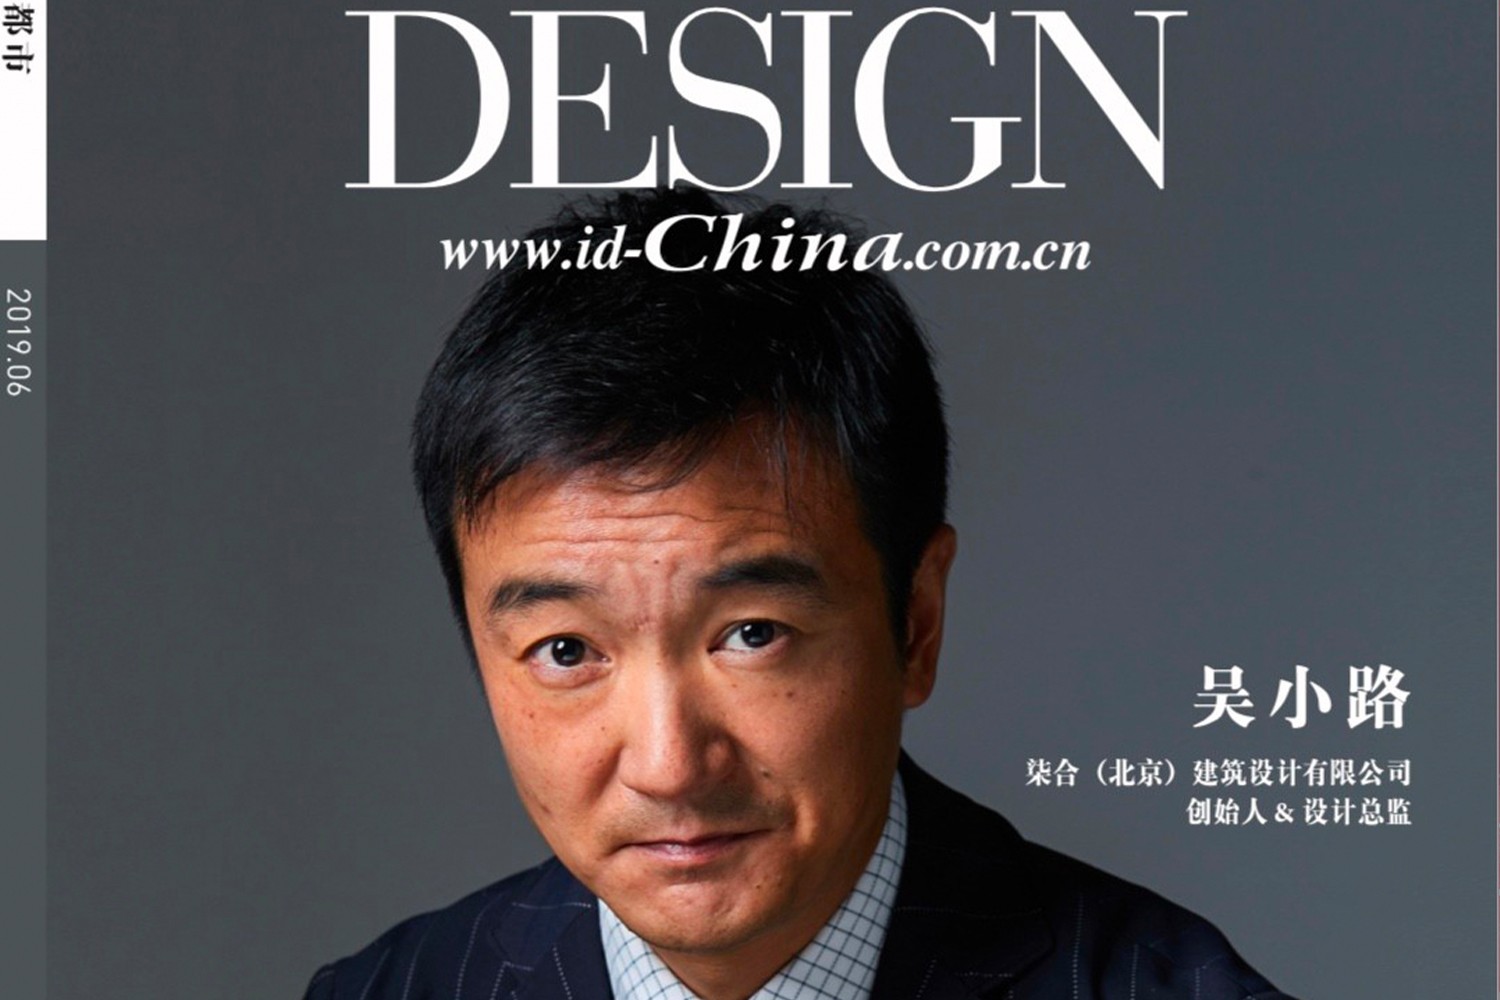 柒合獎訊 | 吳小路先生獲得“2019-2020中國室內設計年度封面人物”